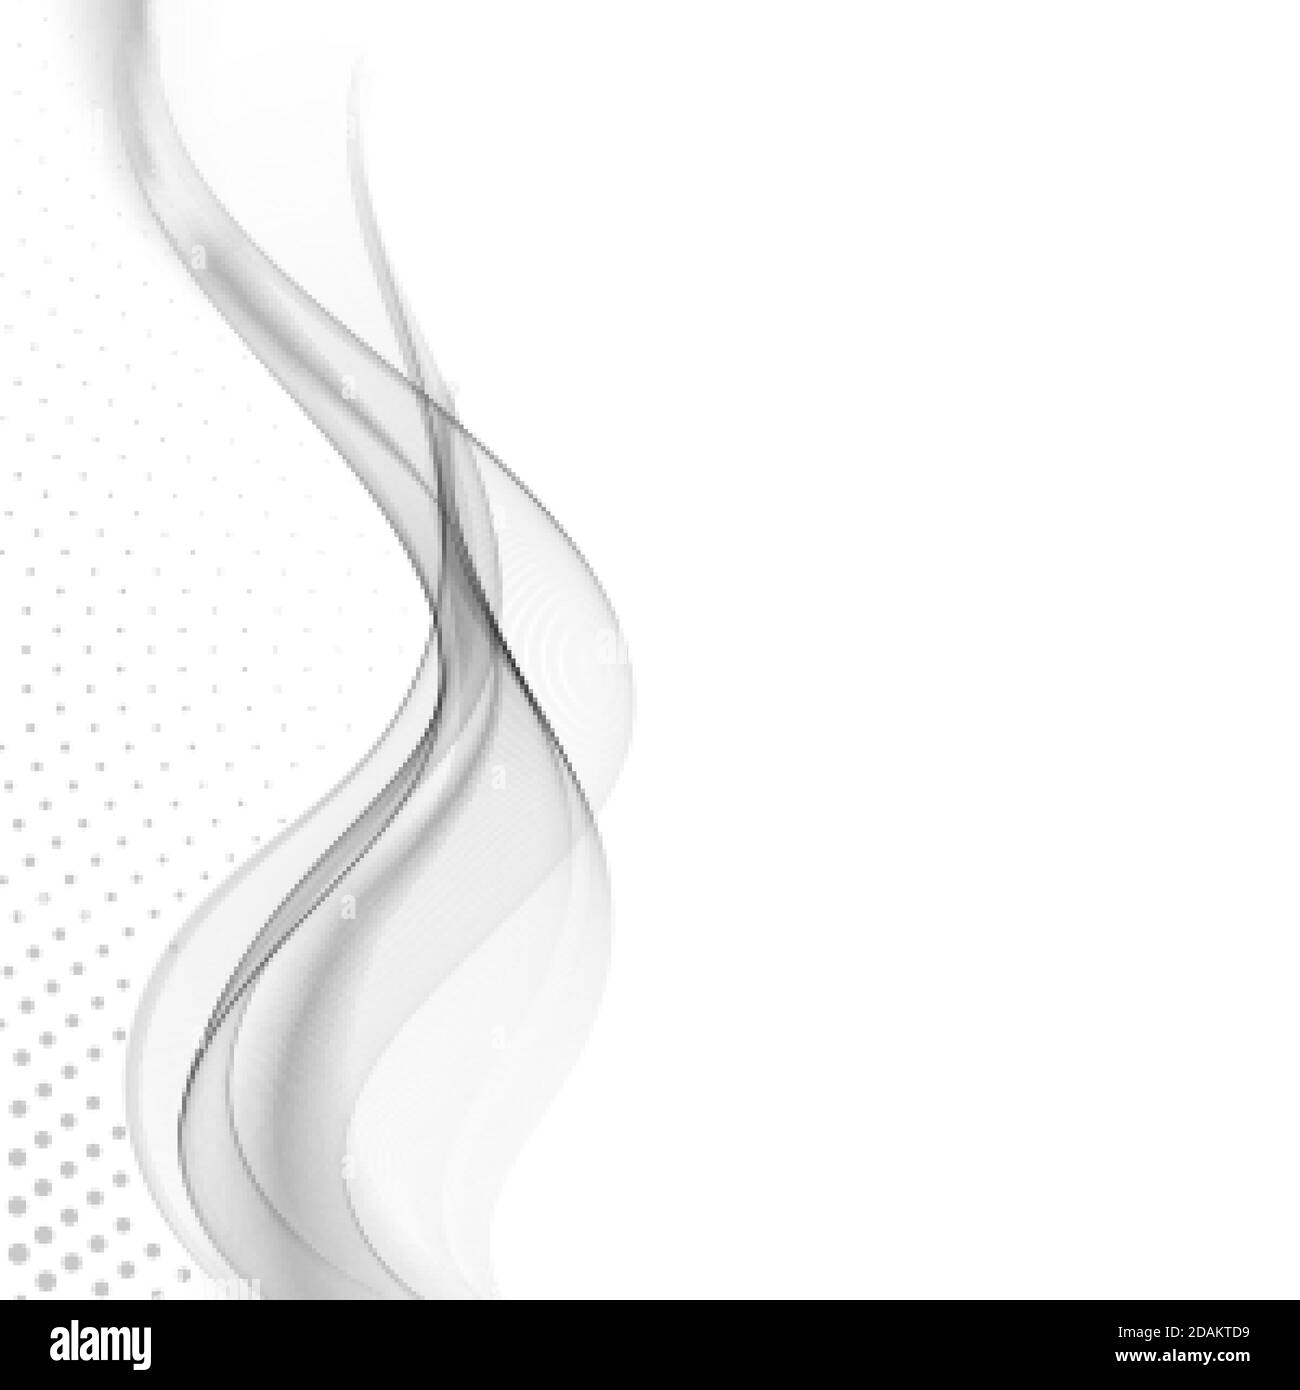 Arrière-plan vectoriel abstrait, lignes grises ondulées pour la brochure, le site Web, la conception de prospectus Illustration de Vecteur